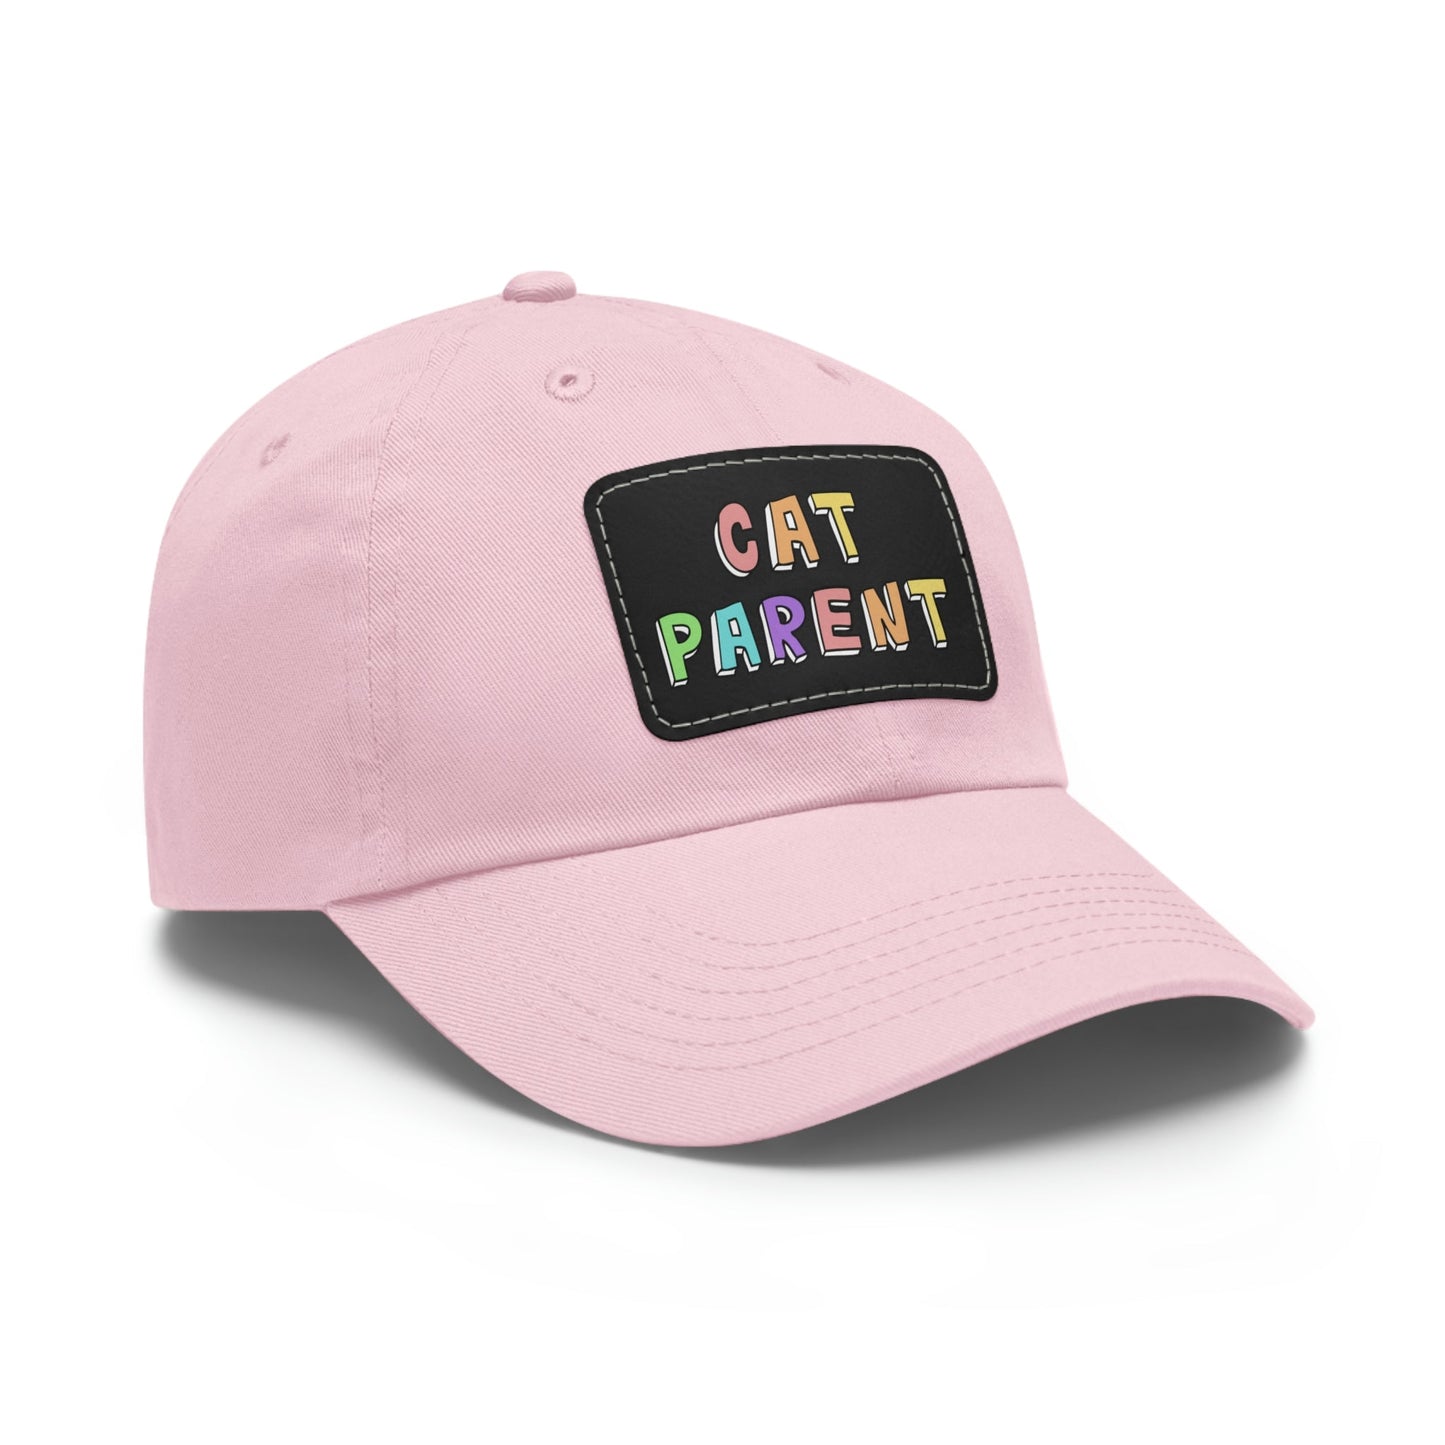 Cat Parent | Dad Hat - Detezi Designs-14909940445693520802